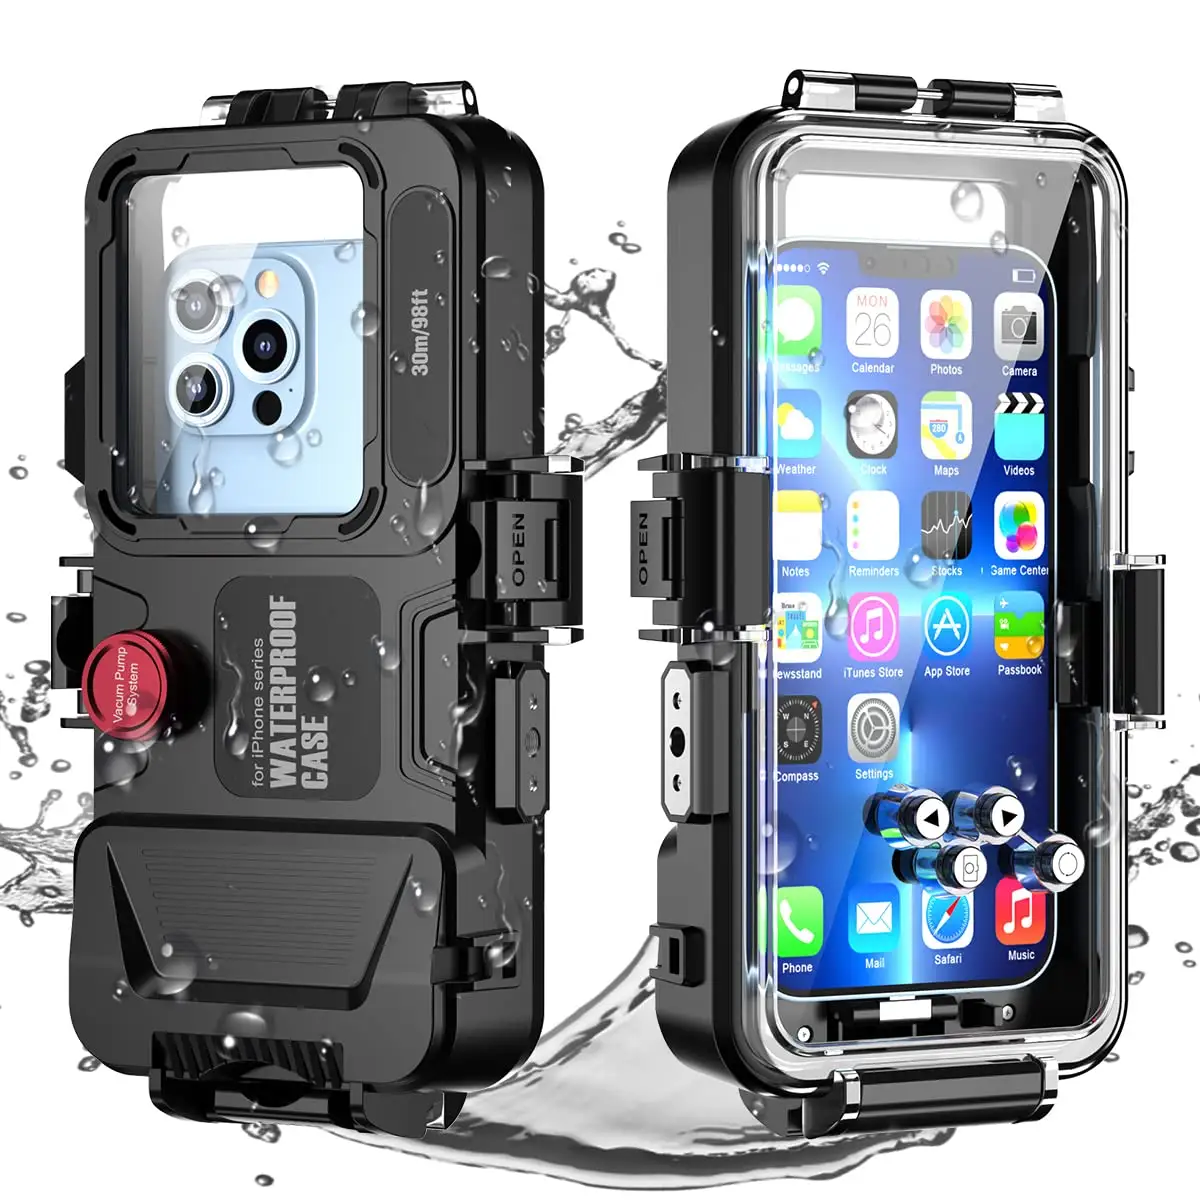 방수 수영 보호 아이폰 시리즈 98FT/30 메터 수중 사진 하우징 ip68 심해 다이빙 전화 케이스